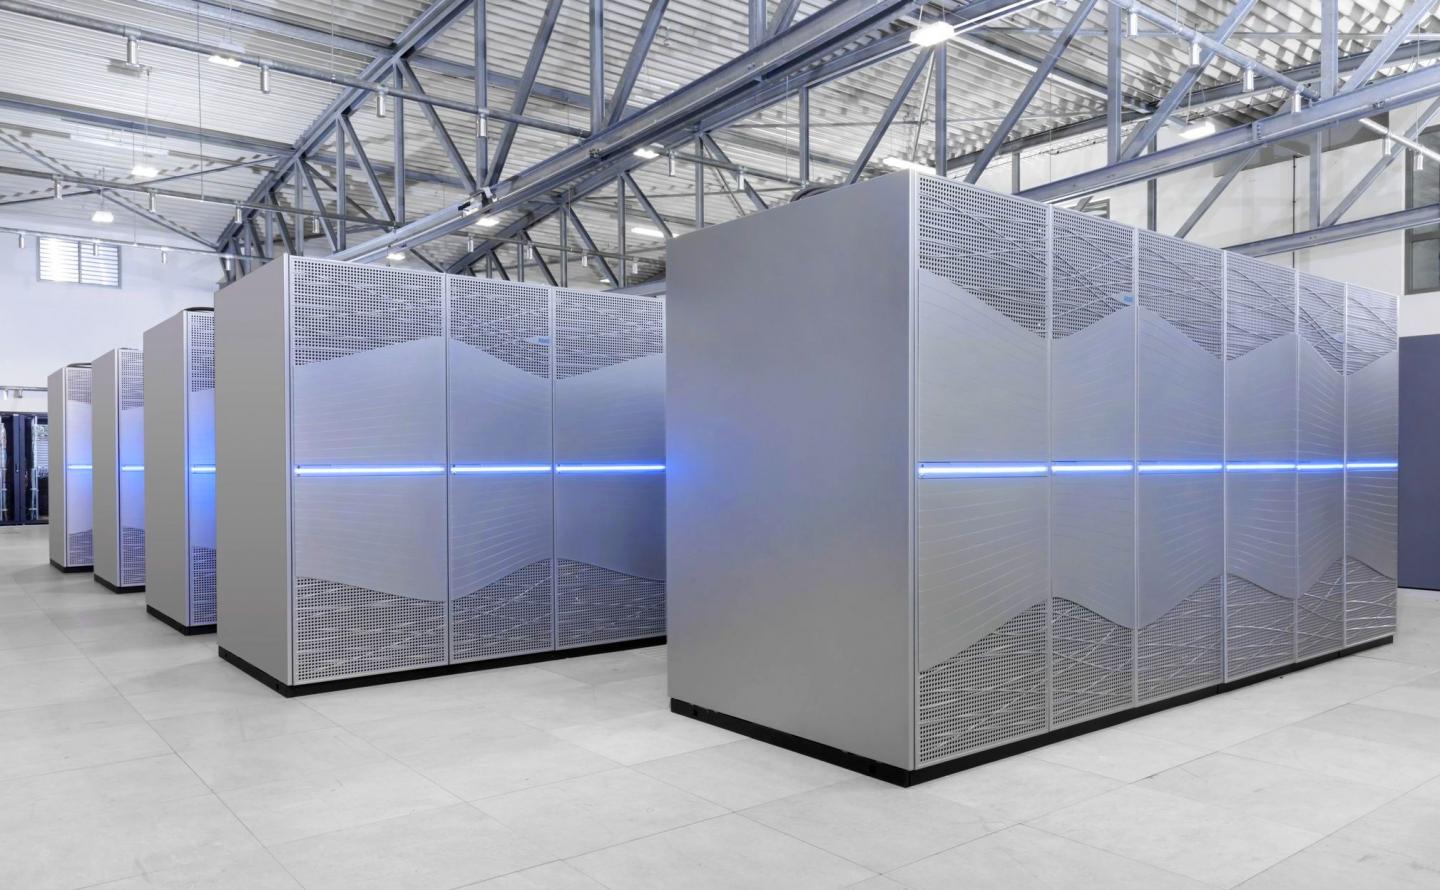 The Jülich Supercomputer JUWELS